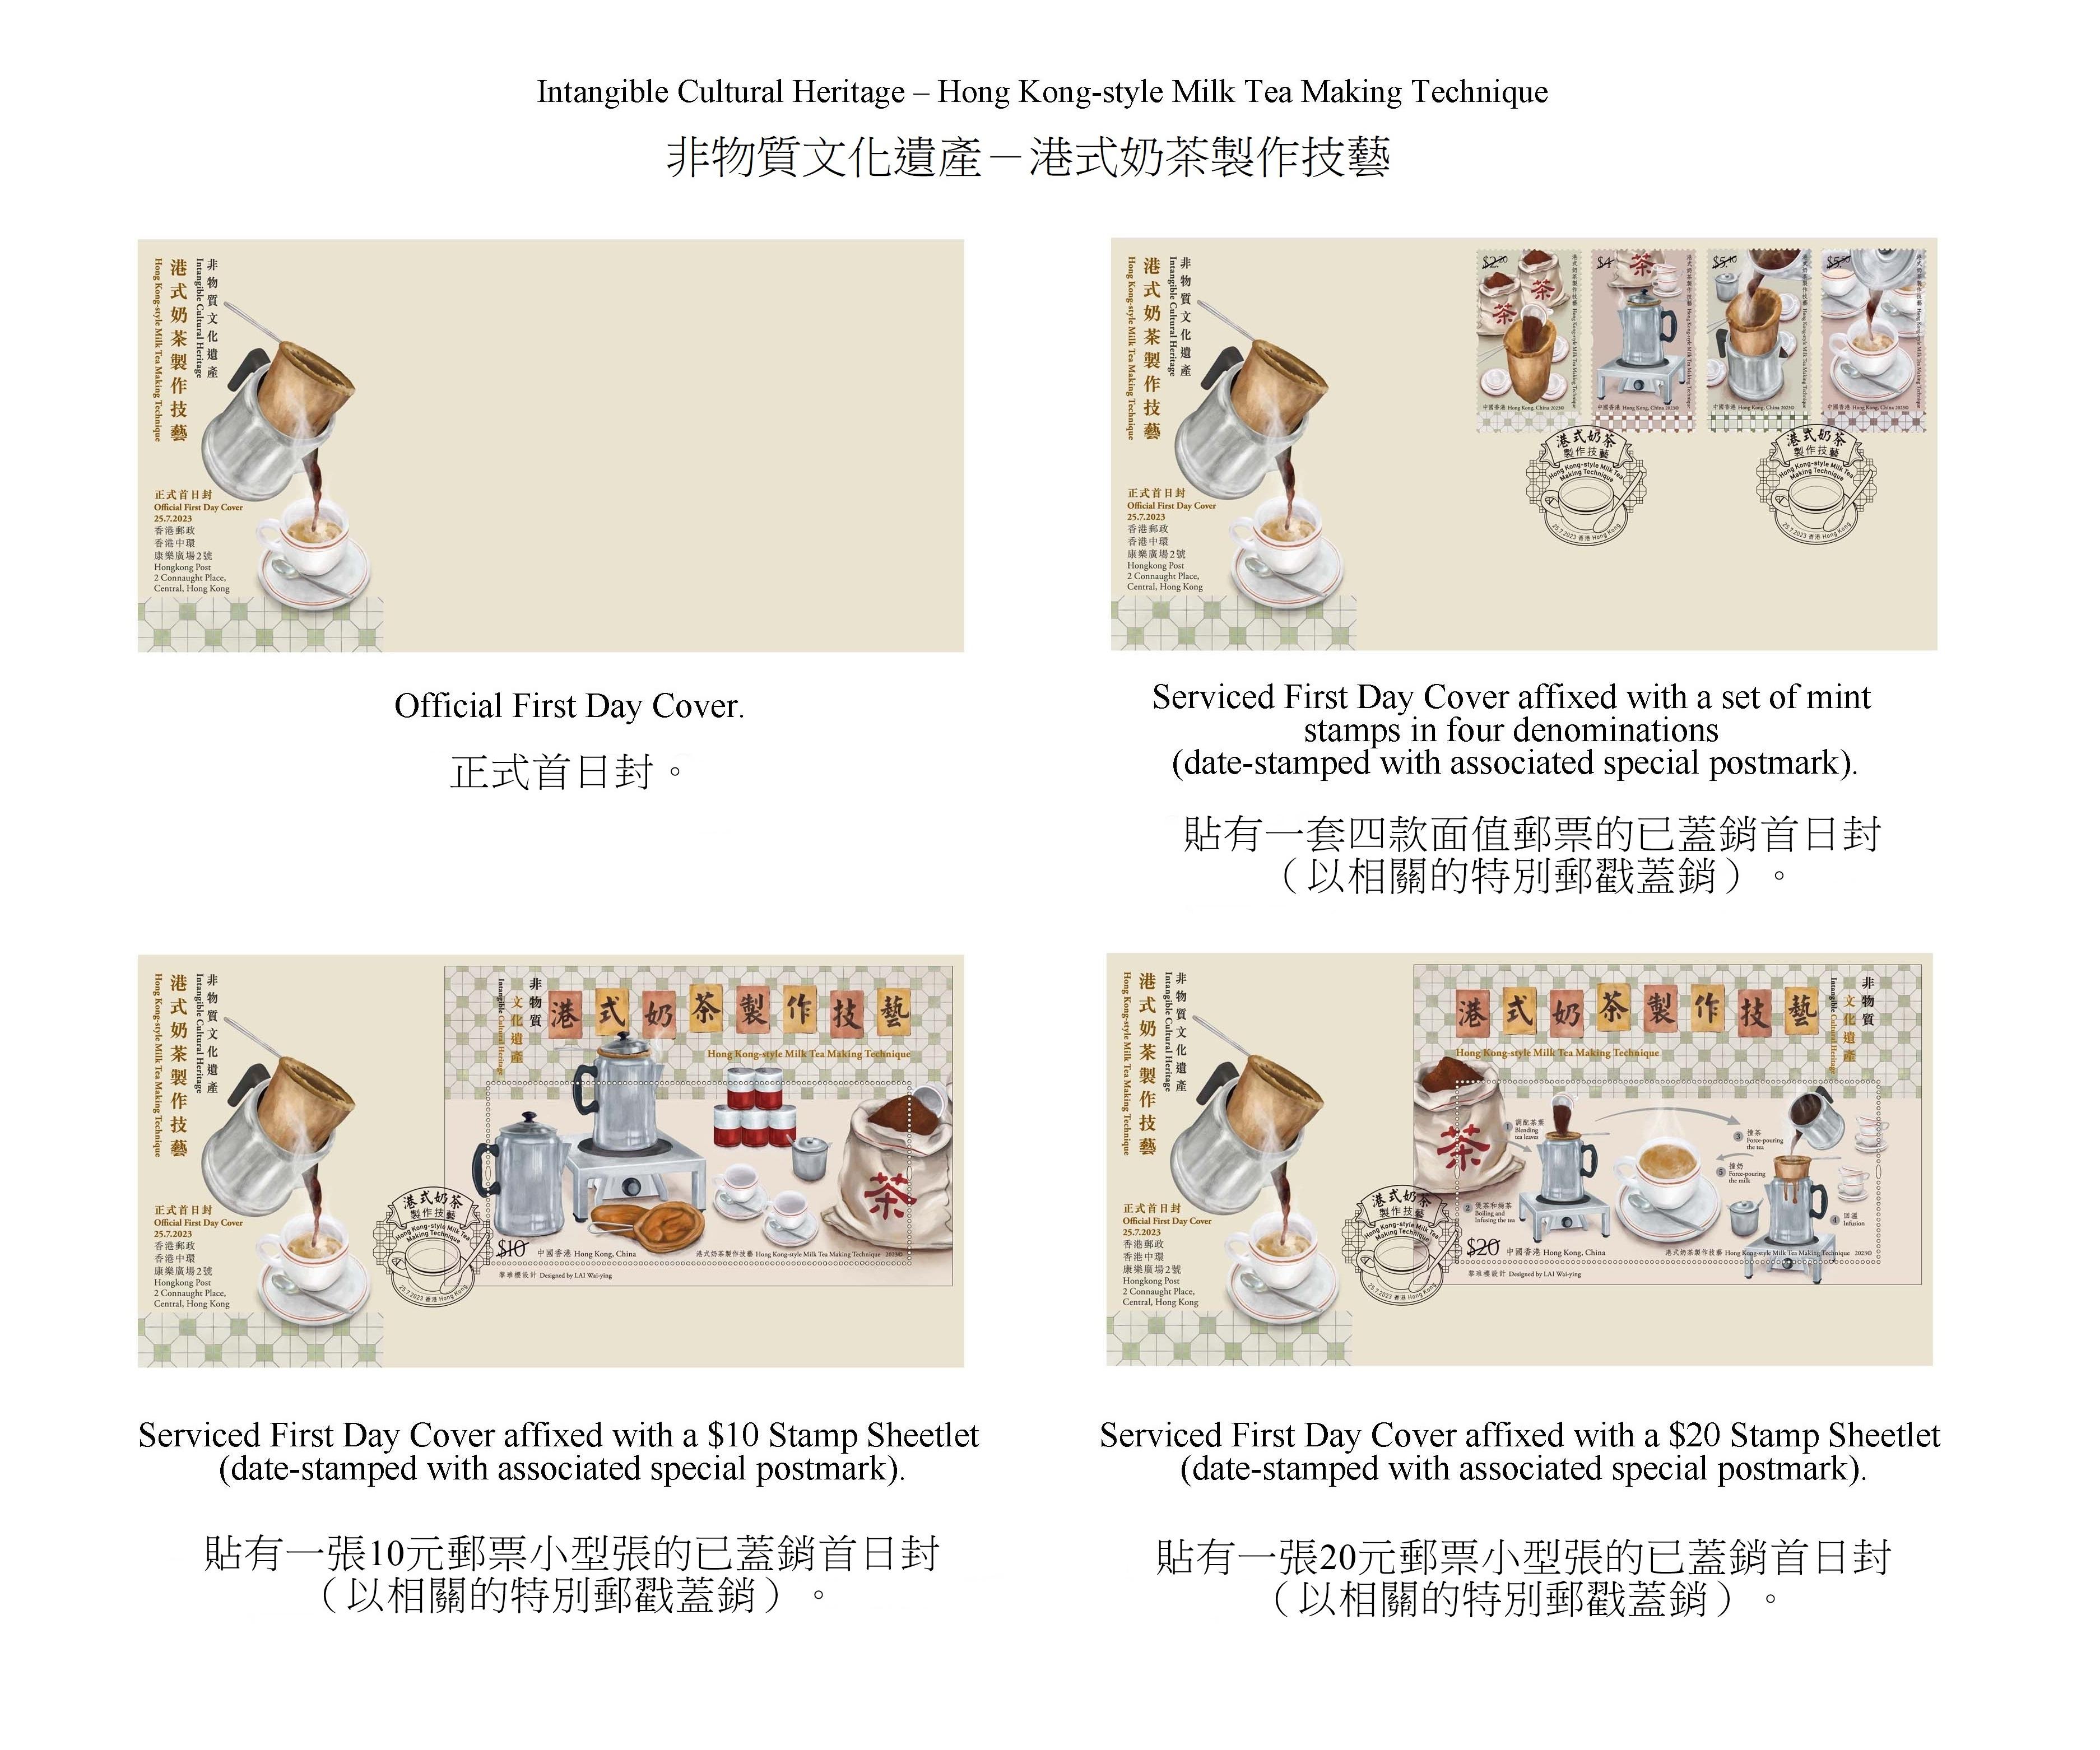 香港郵政七月二十五日（星期二）發行以「非物質文化遺產——港式奶茶製作技藝」為題的特別郵票及相關集郵品。圖示首日封。